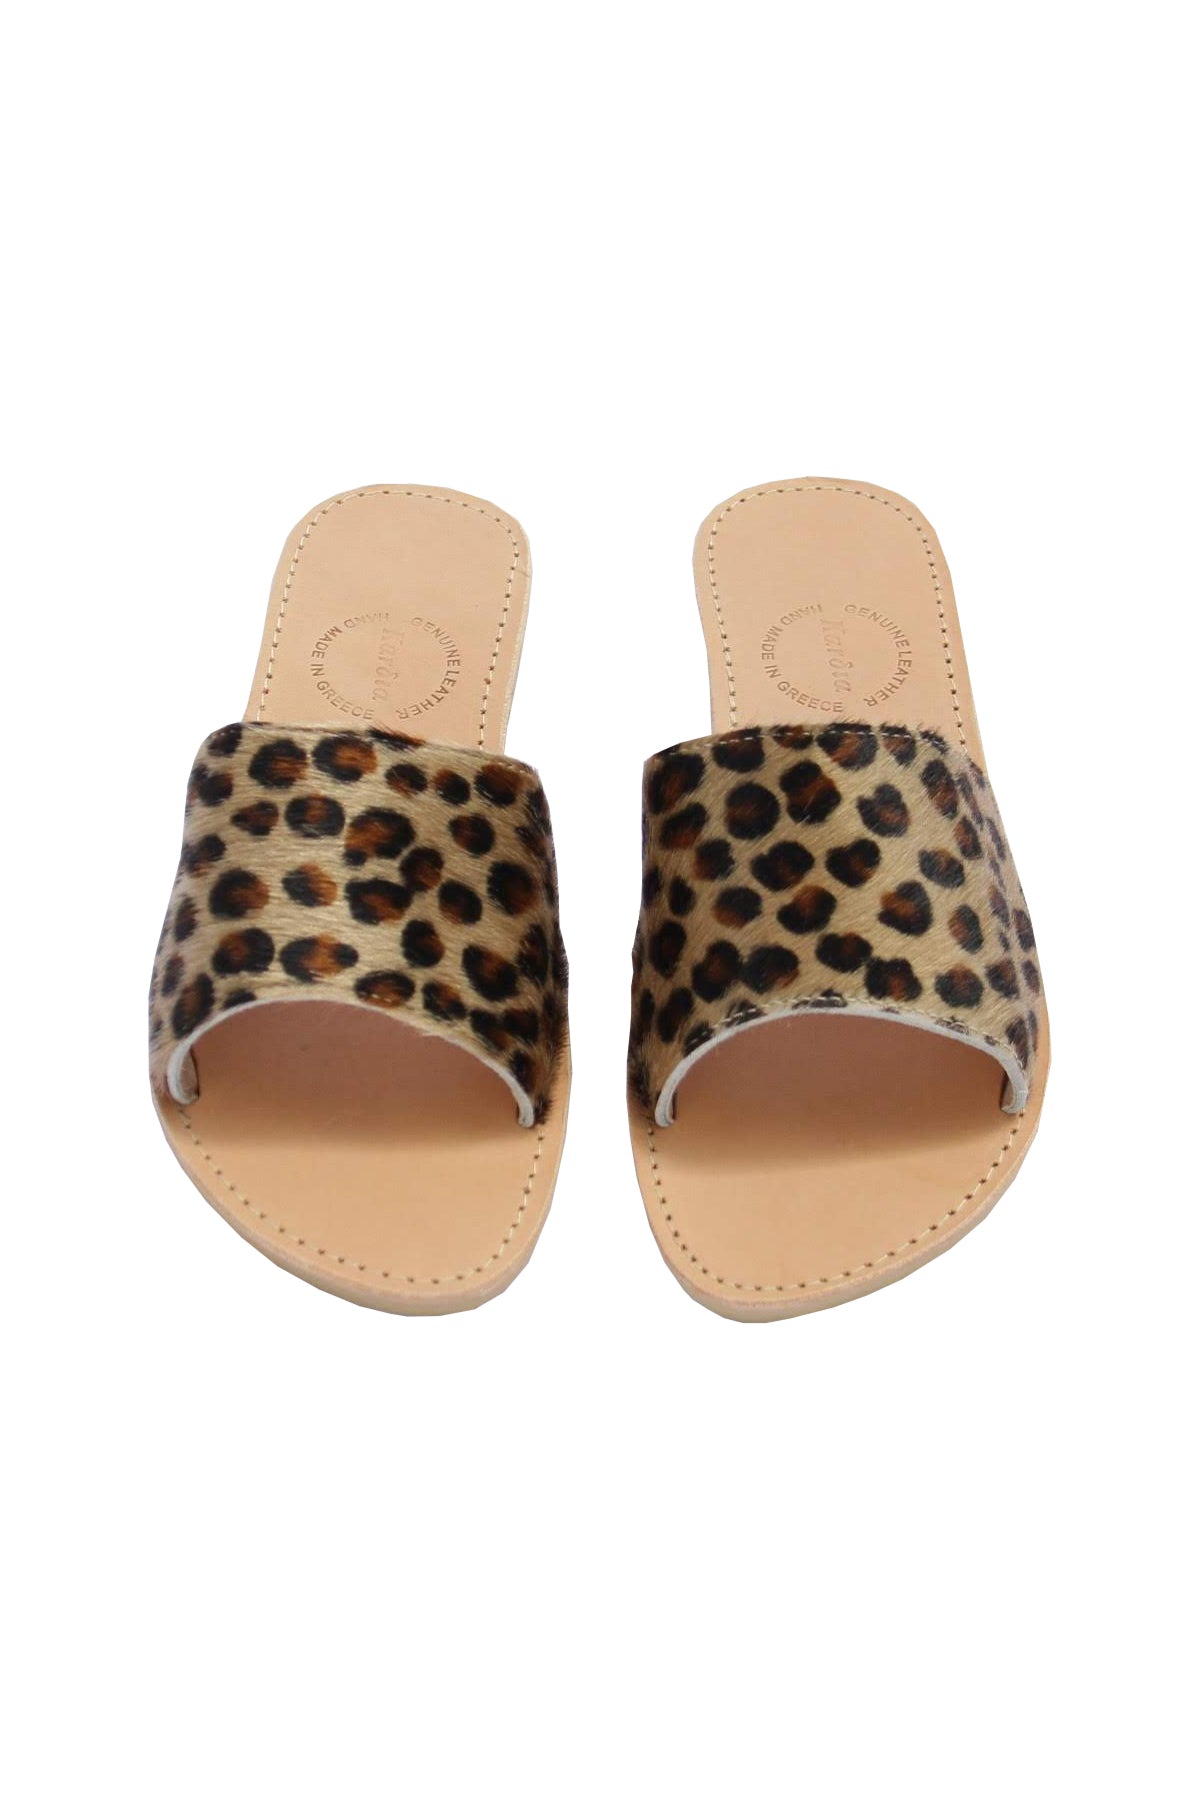 Clio Slides in textured Leopard Ponyskin leather - Kardia